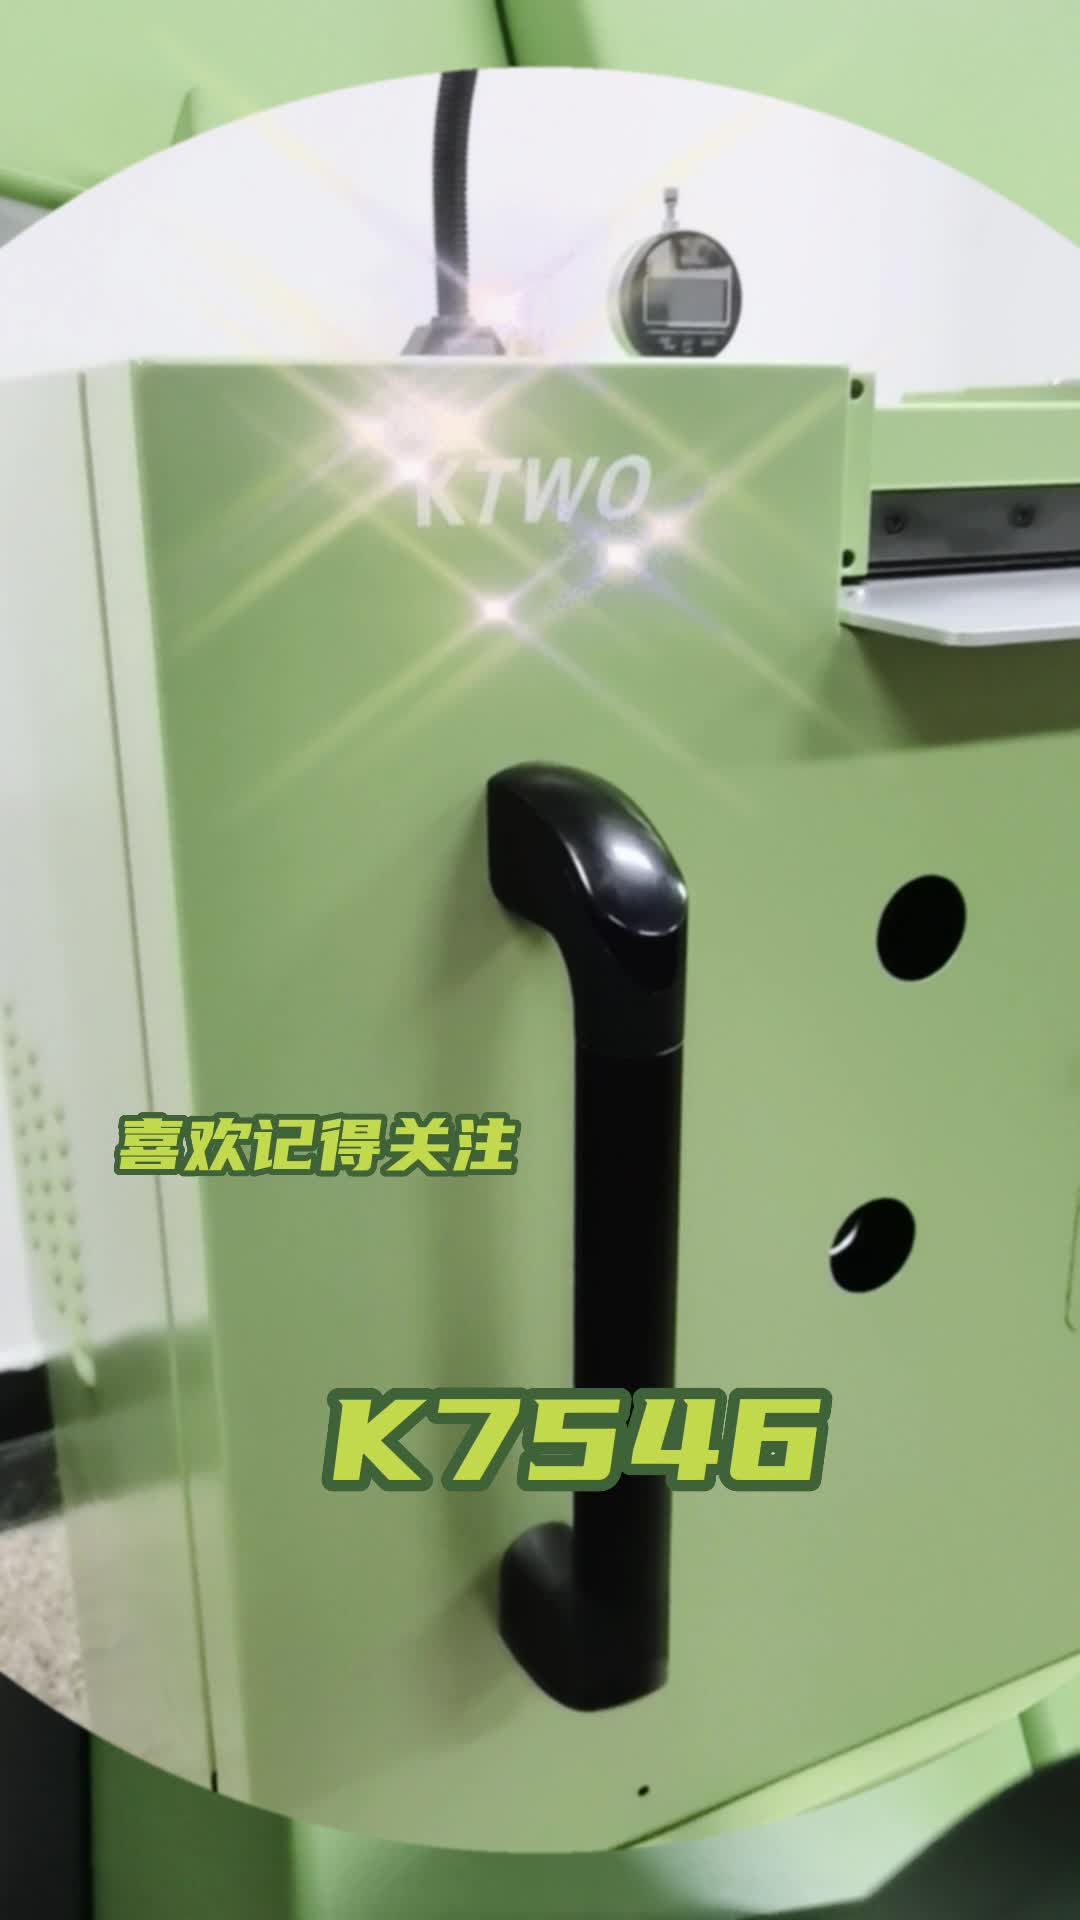 KTWO320小型片皮机外观展示